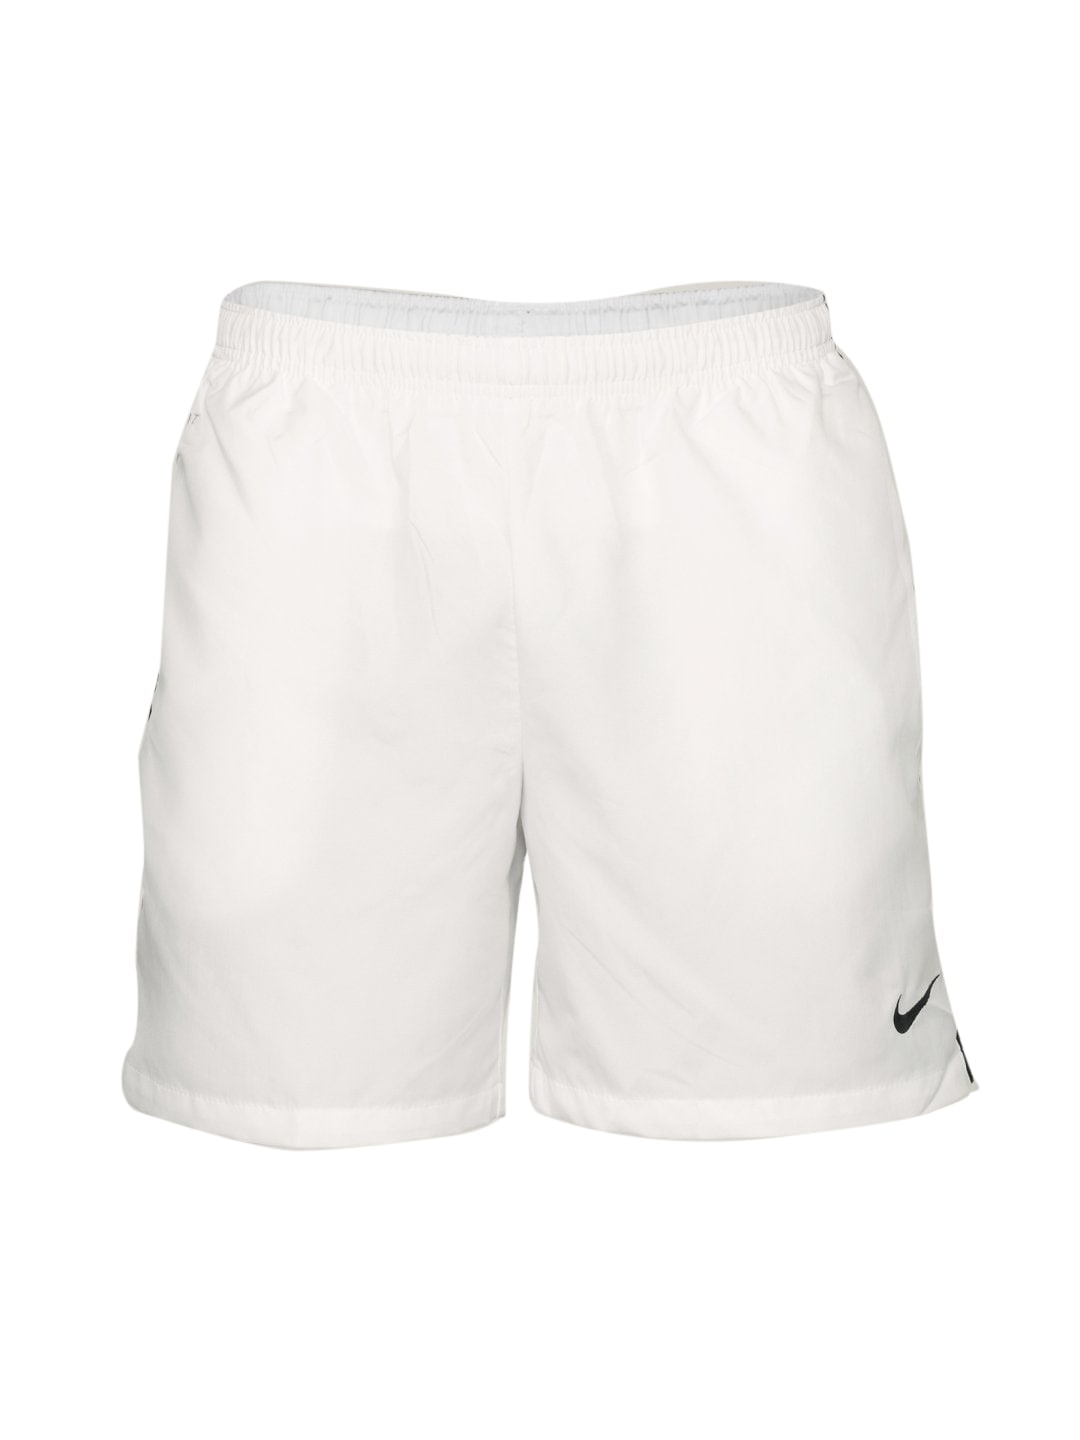 Nike Men's Fit White Short